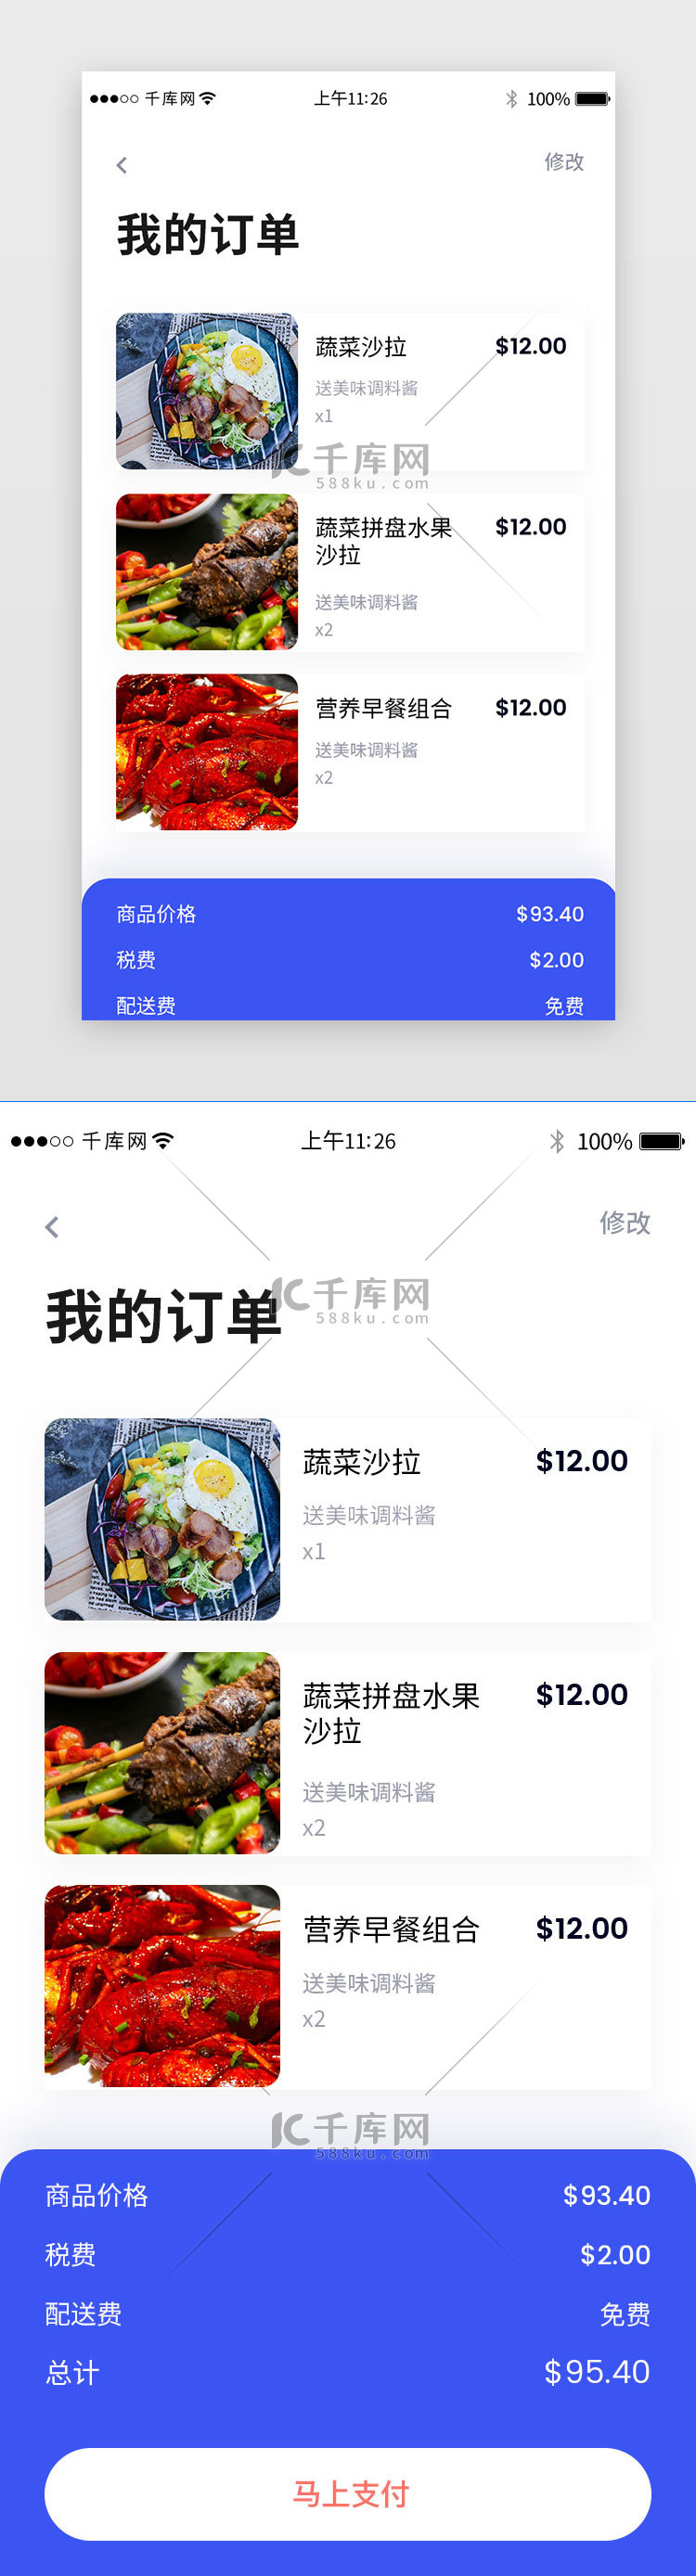 美食外卖类app列表页